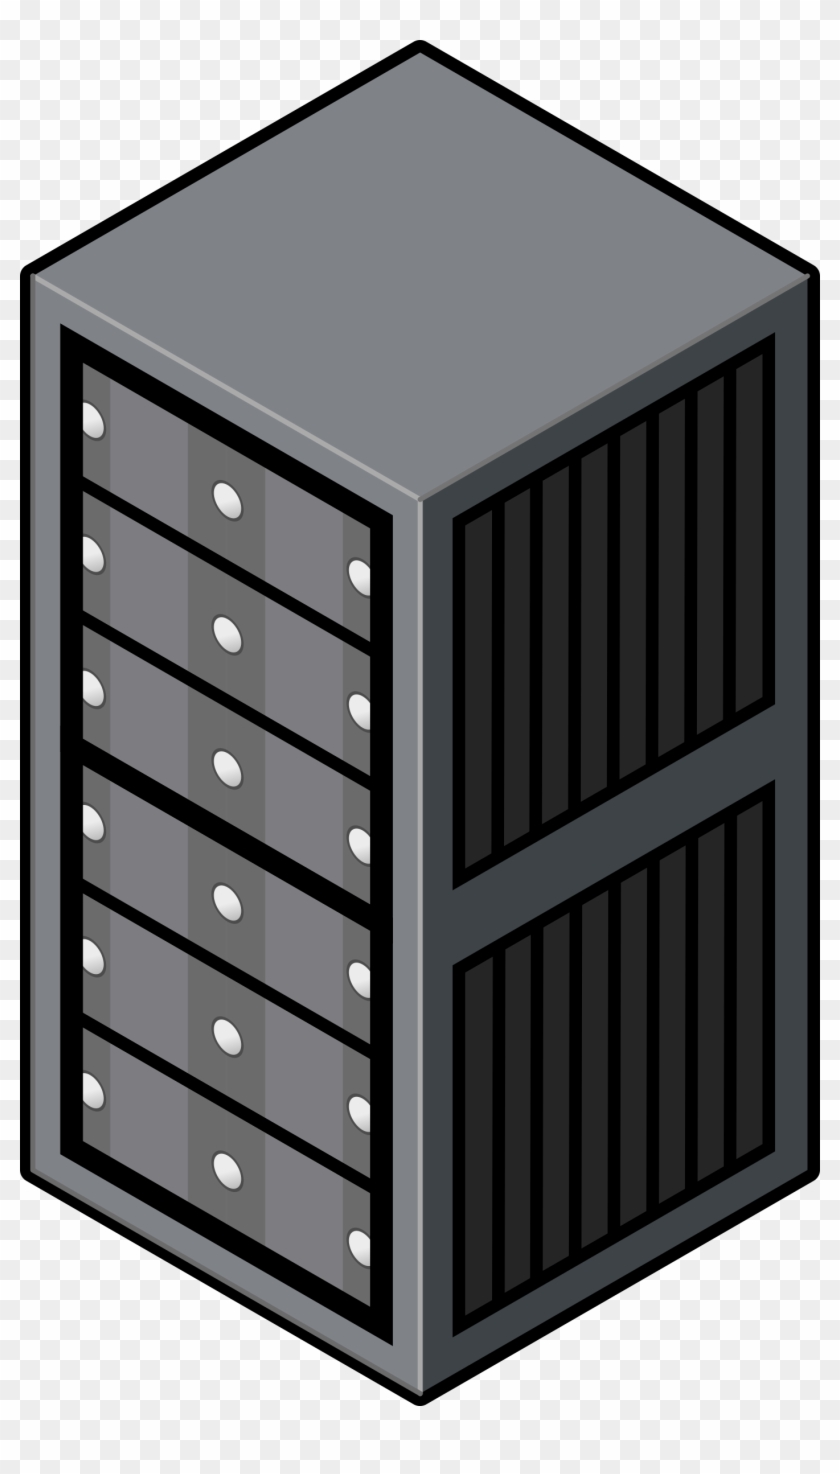 Server Computer Clipart - Server Rack Clip Art - Png Download #413409